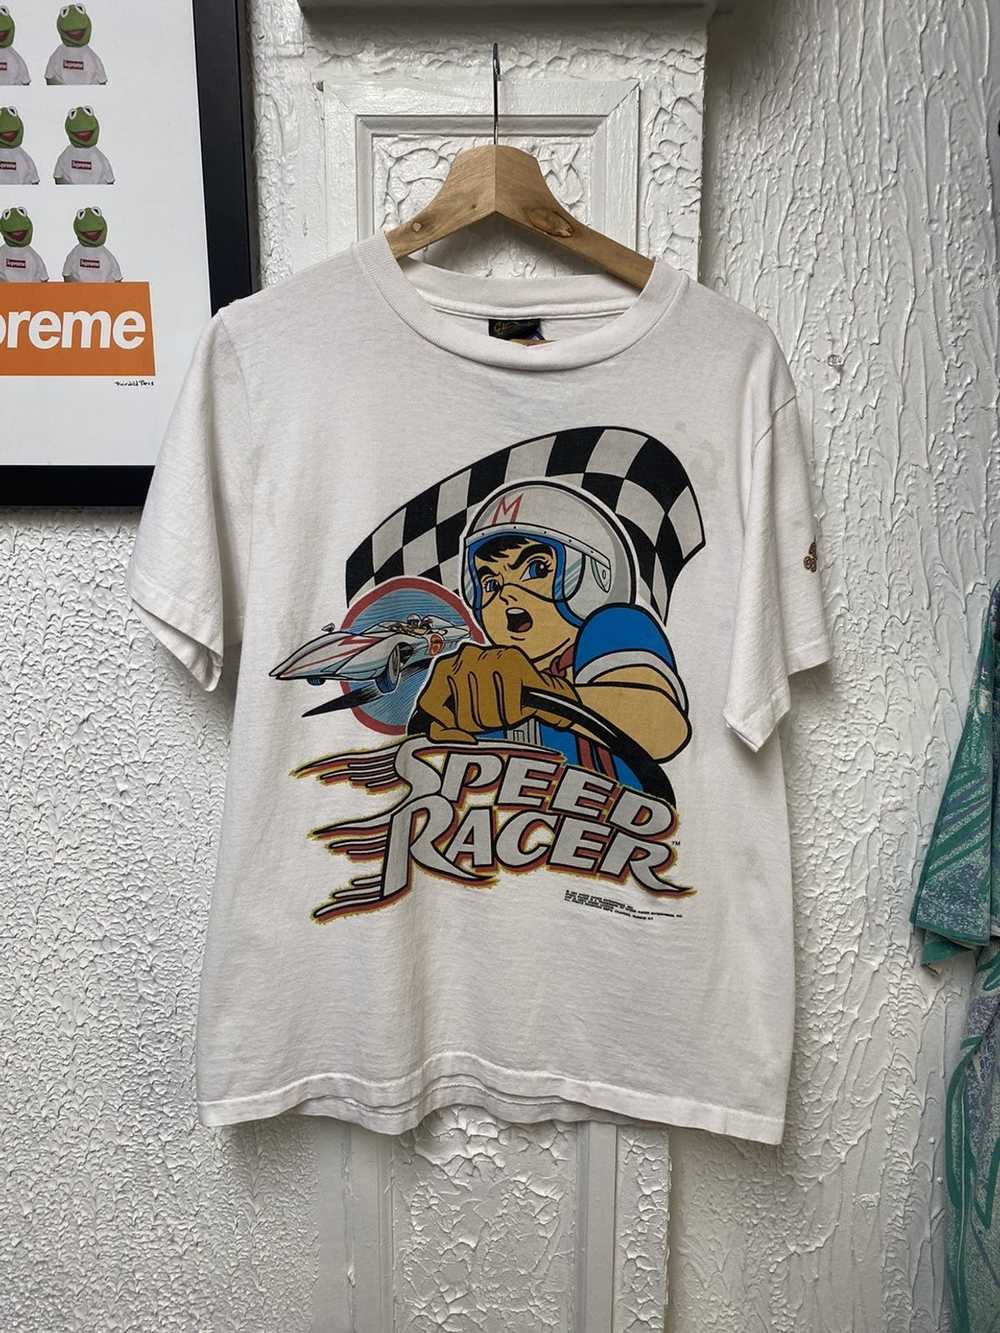 Speed racer 1992 vintage - Gem